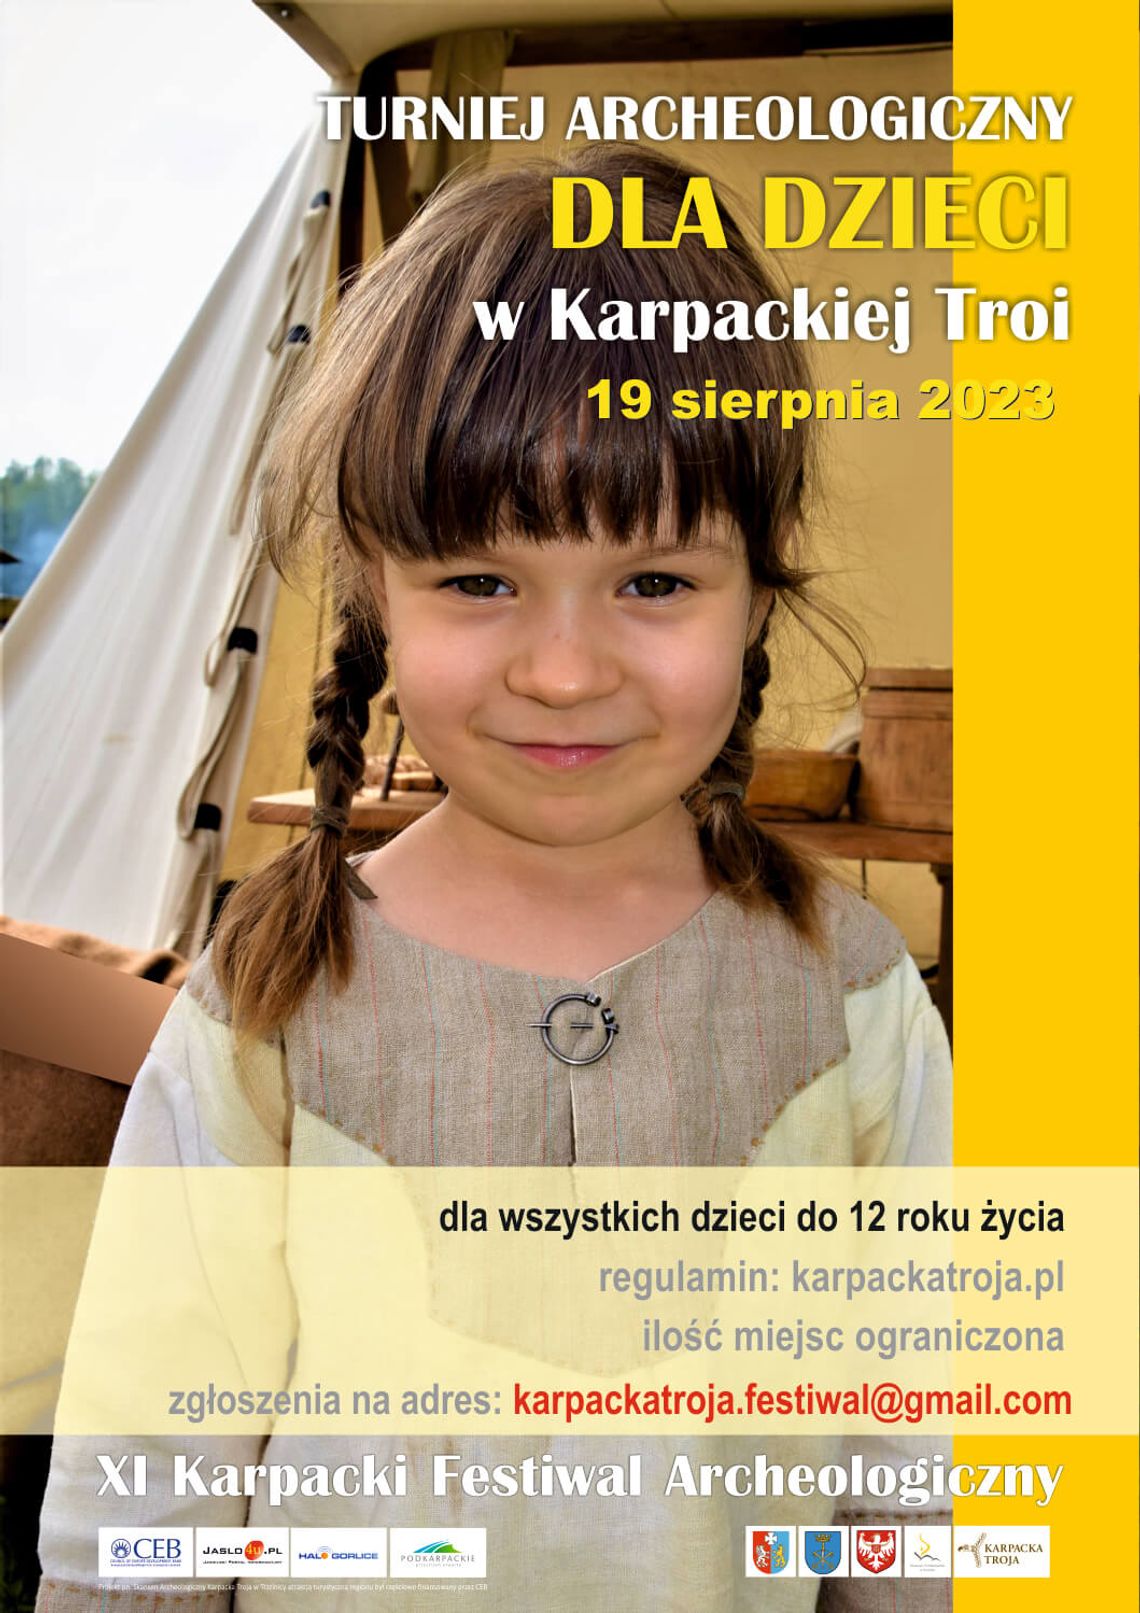 Turniej Archeologiczny dla dzieci w Karpackiej Troi | halogorlice.info